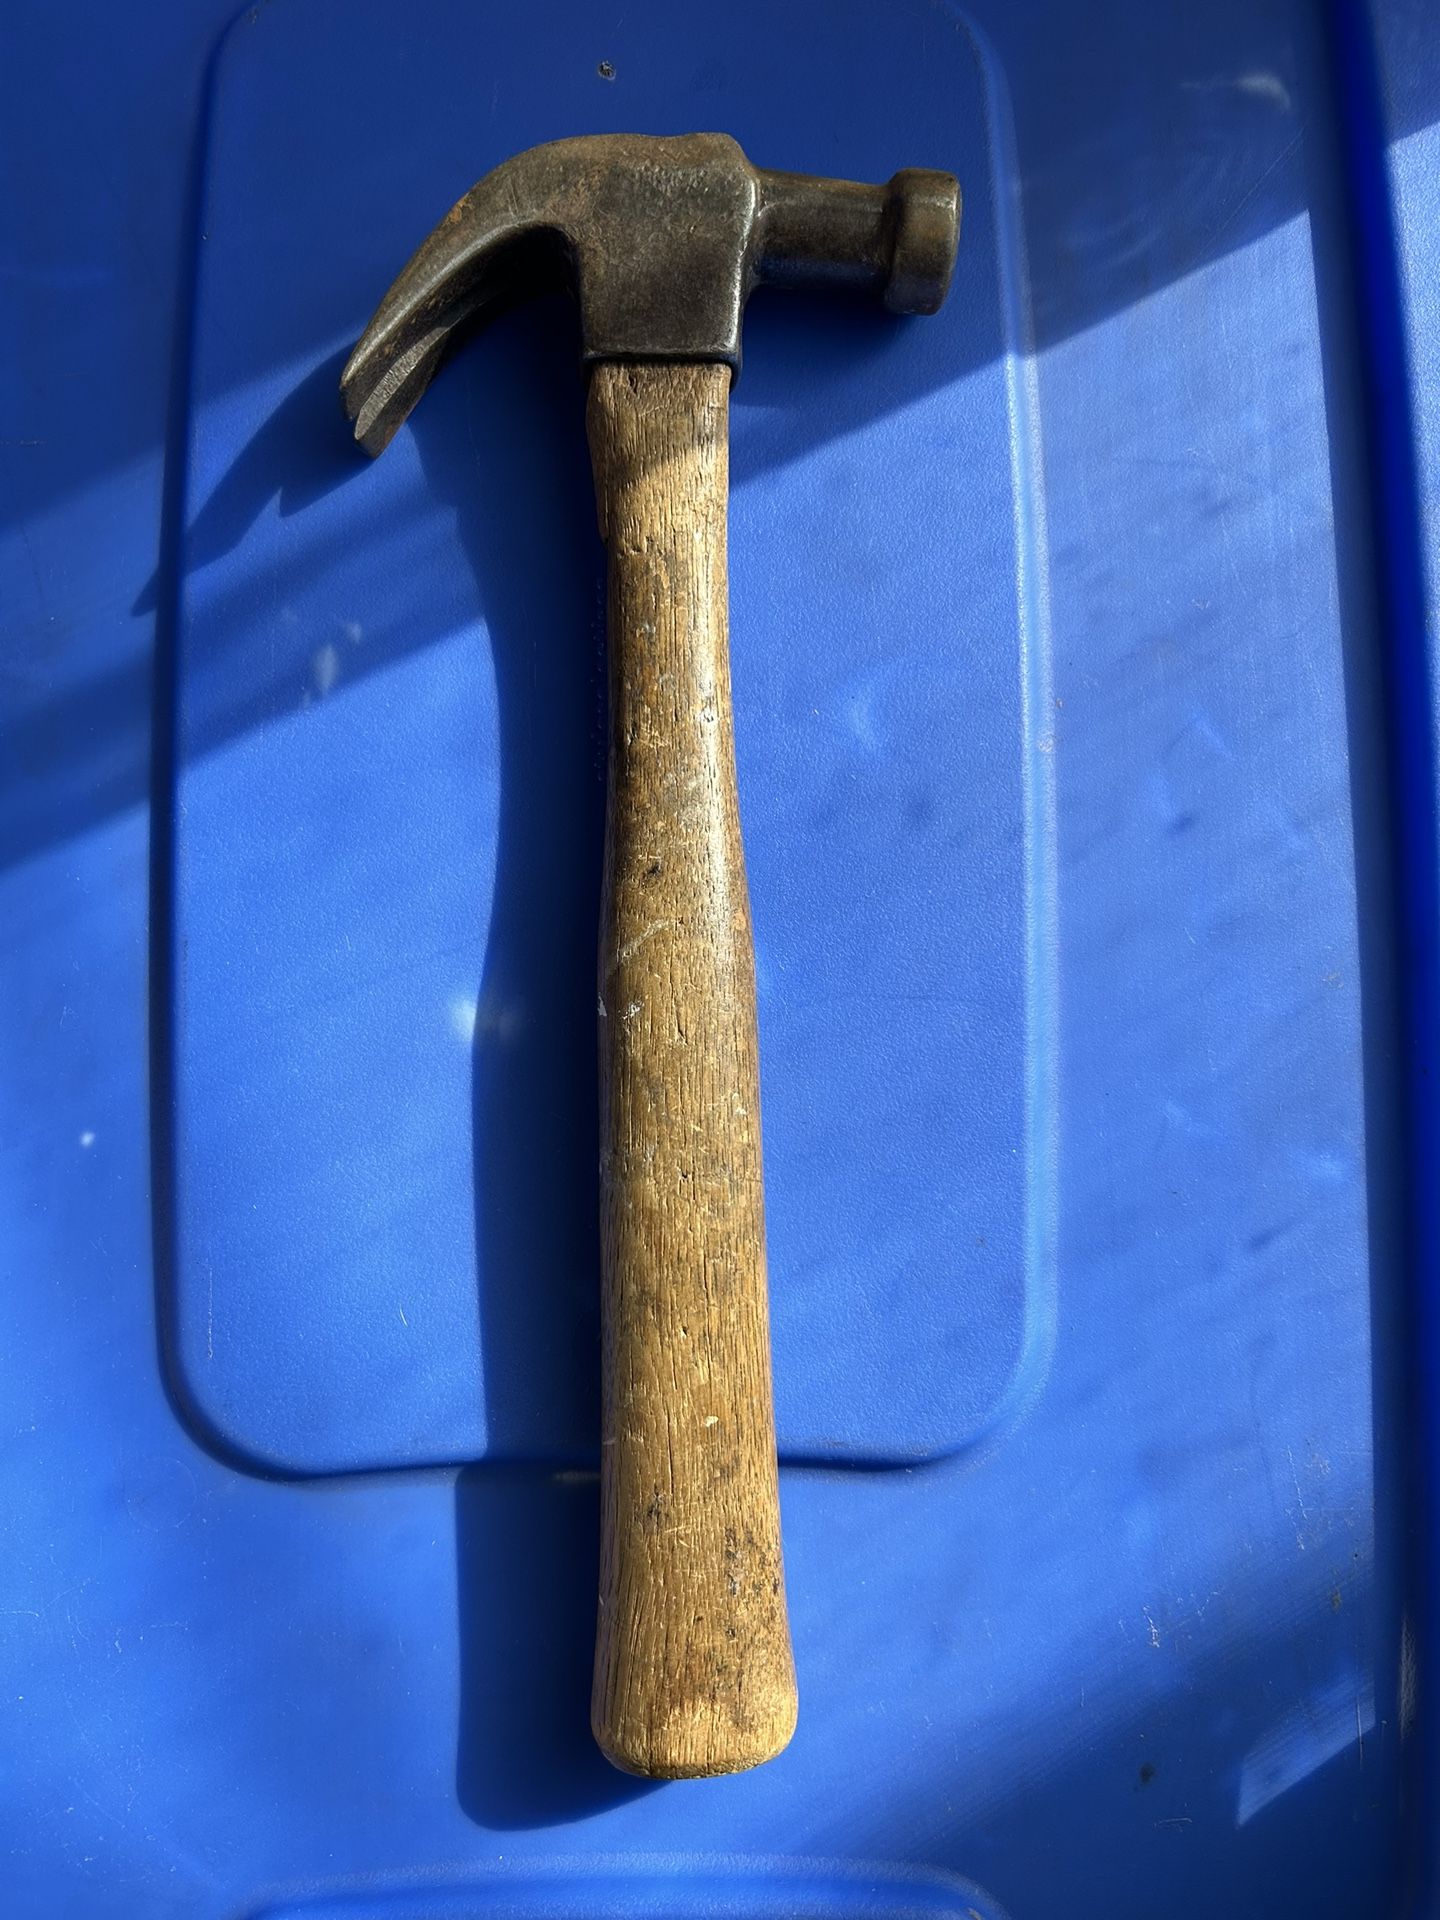 Hammer 